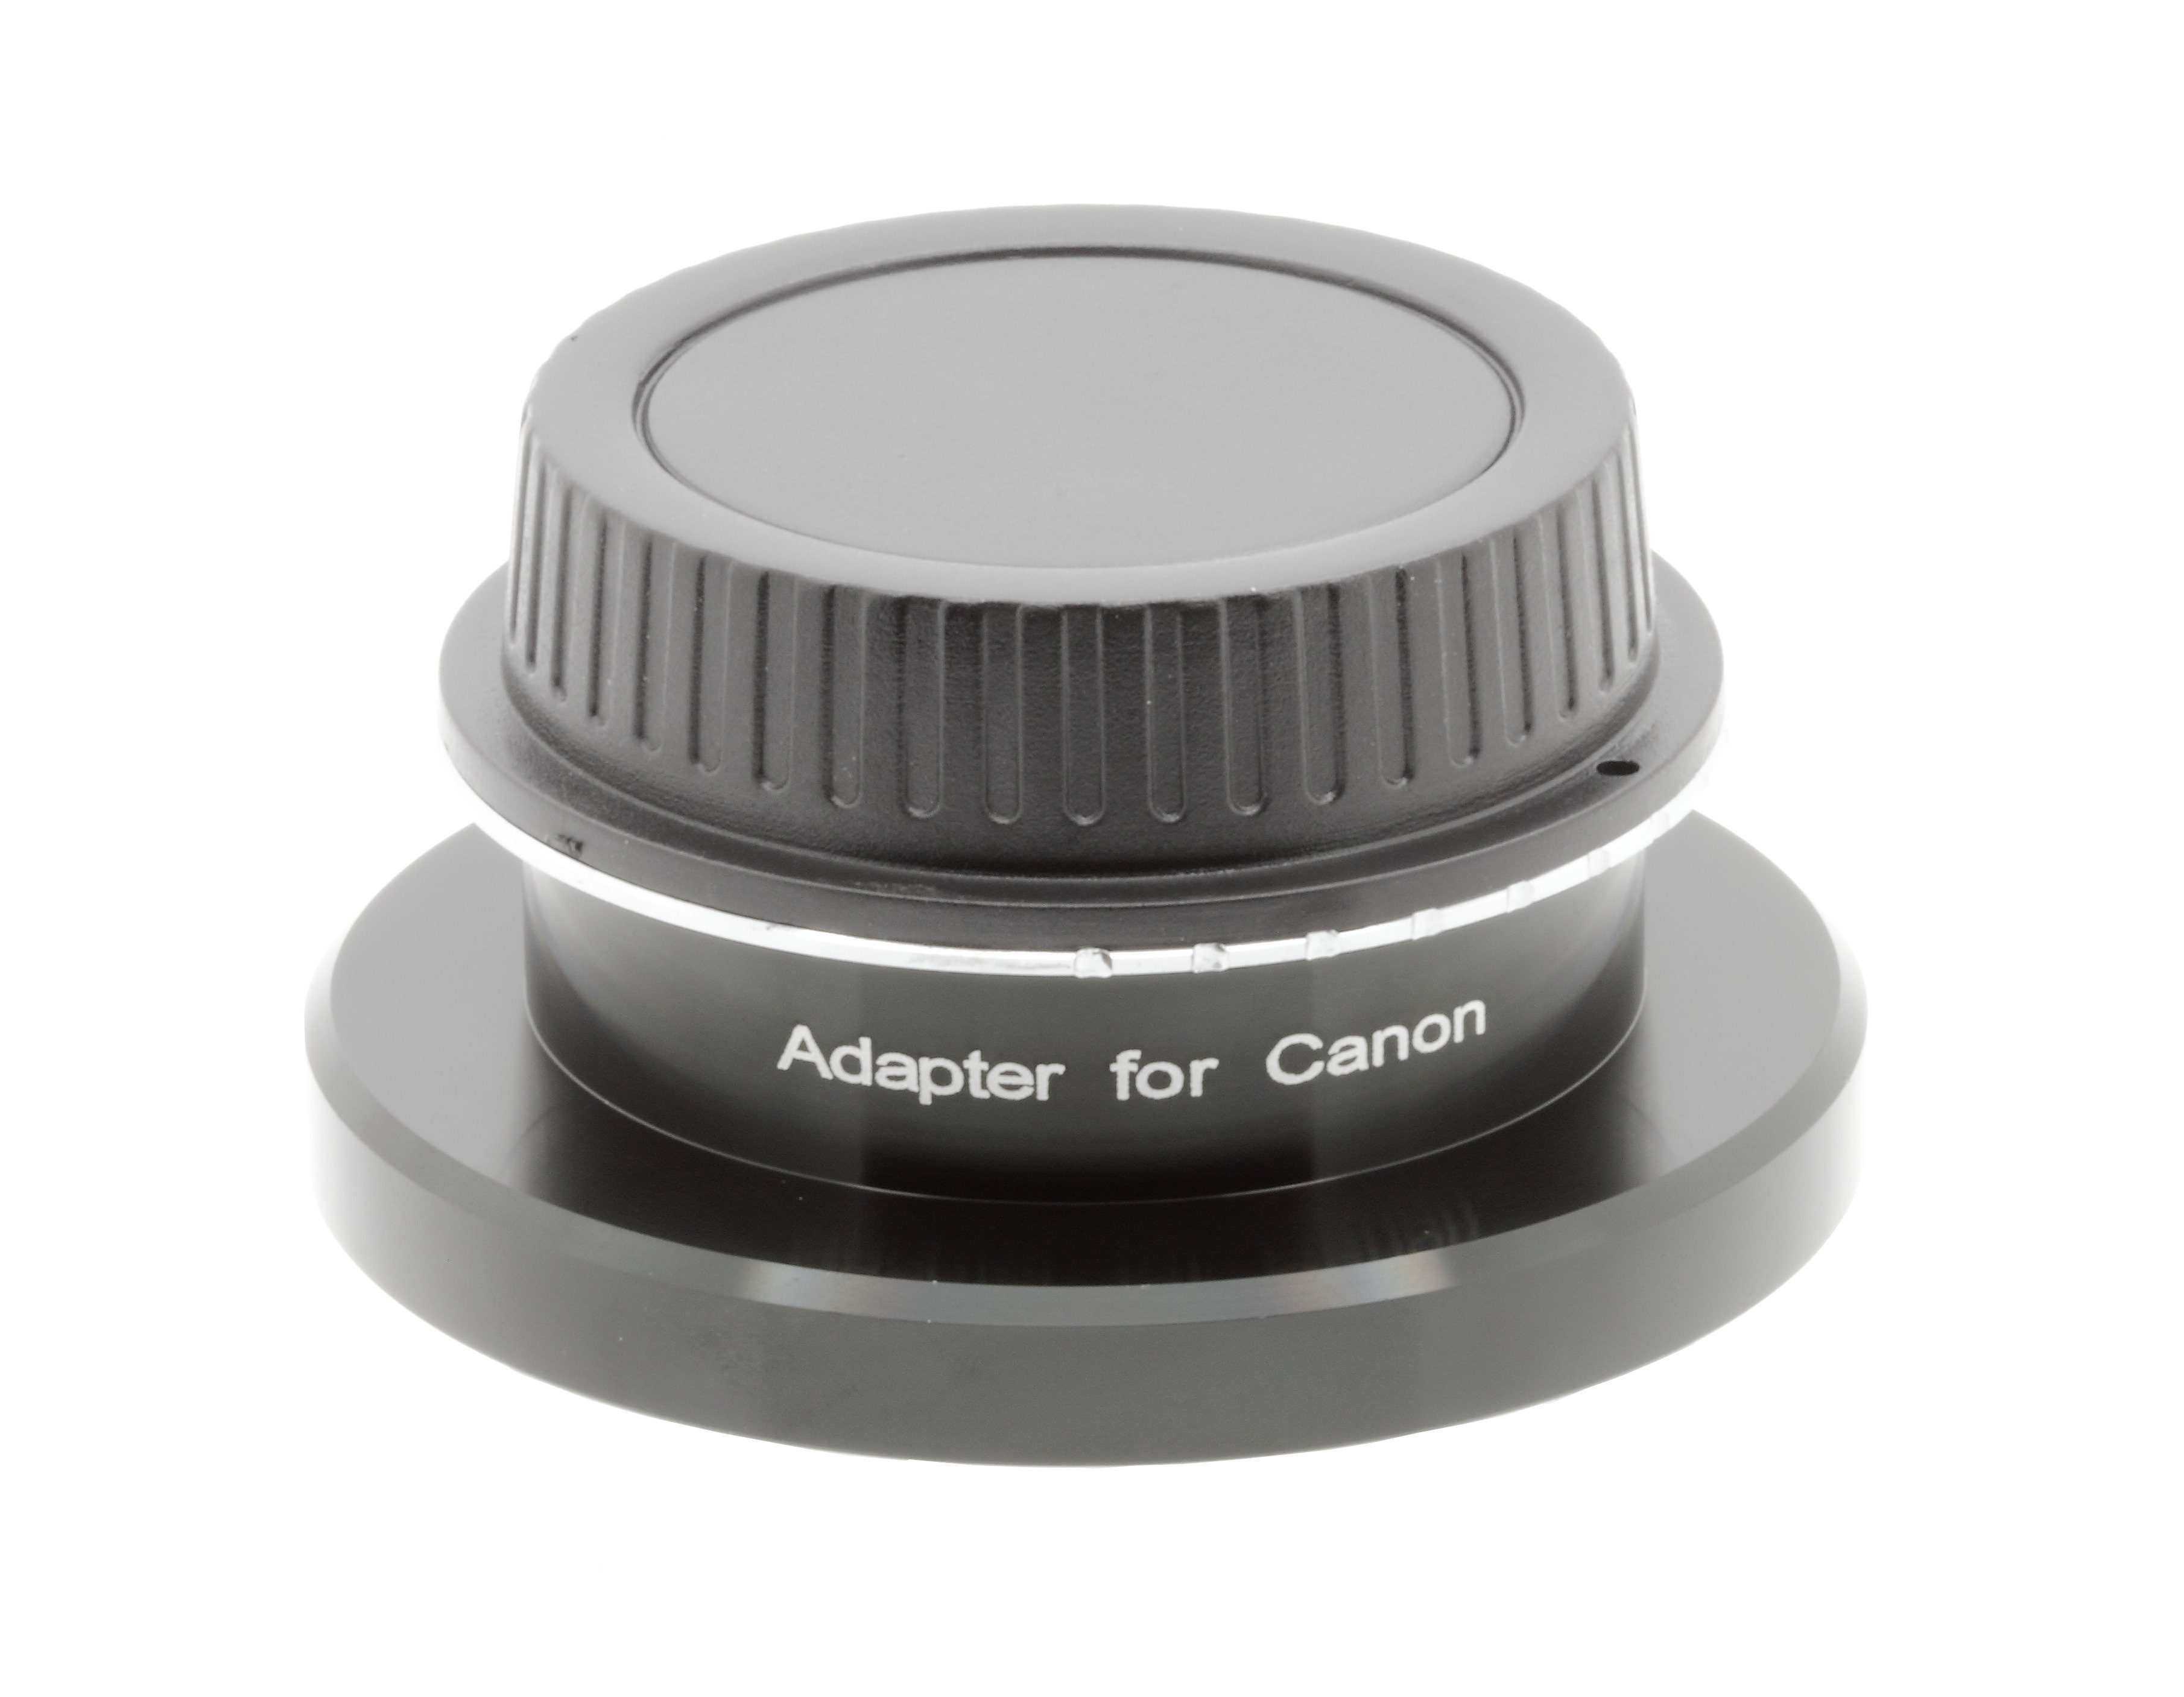 EXPLORE SCIENTIFIC Spezial T2-Ring Canon 3" Reducer Objektiv-Adapter